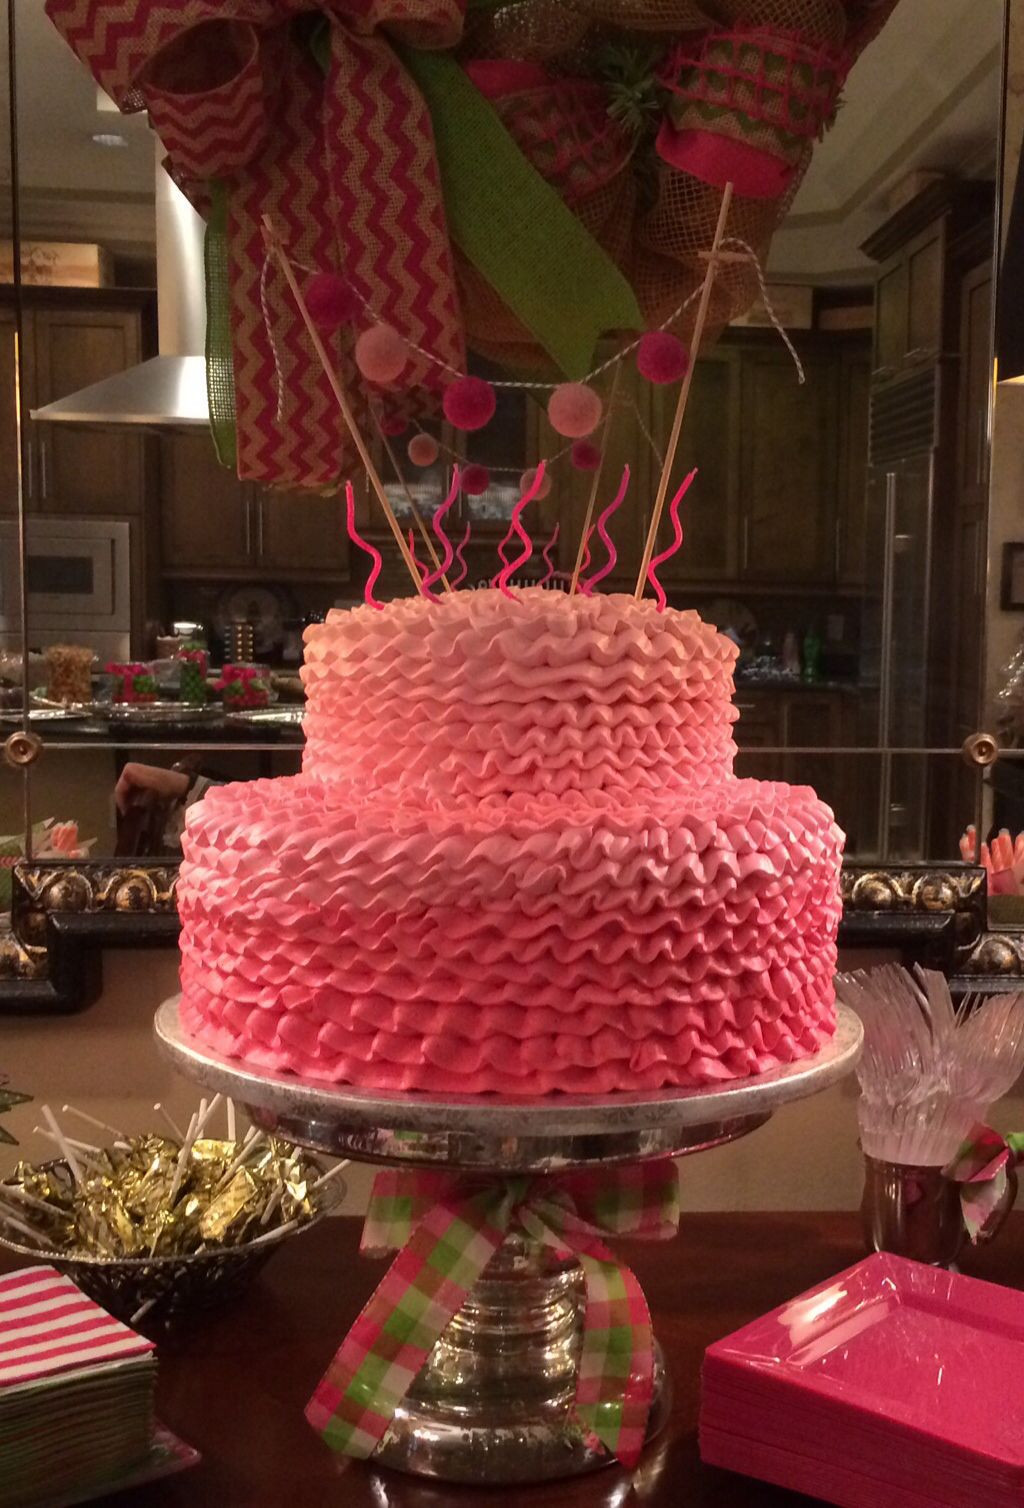 Publix Cakes Designs Birthday
 Preppy pink ombré cake from Publix Love a Publix cake